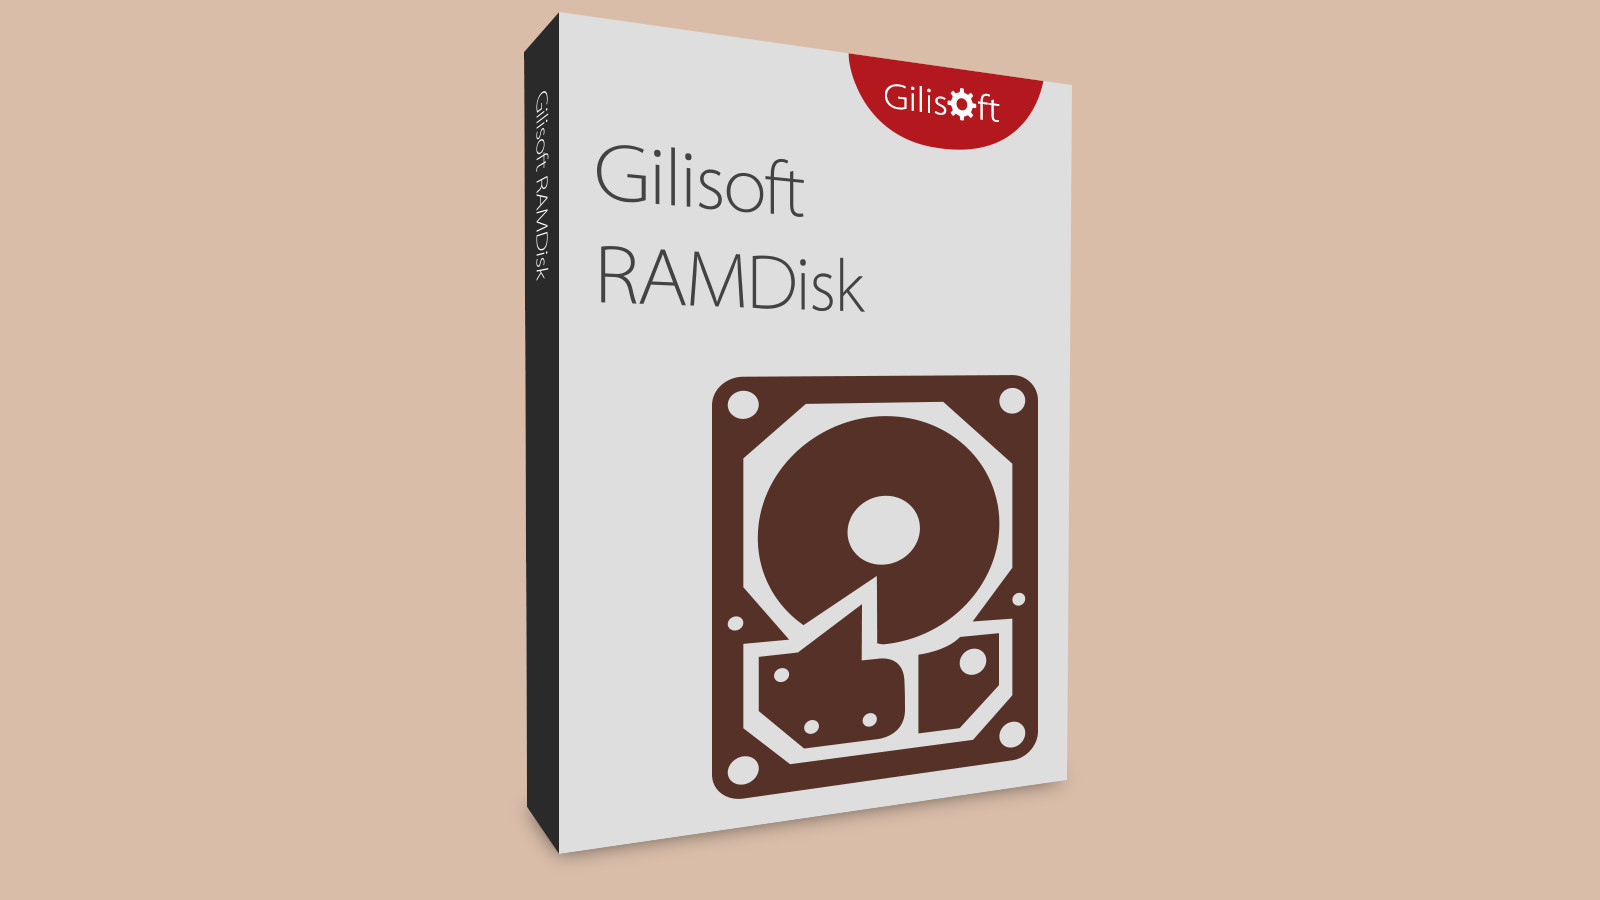 Gilisoft RAMDisk CD Key, $15.54